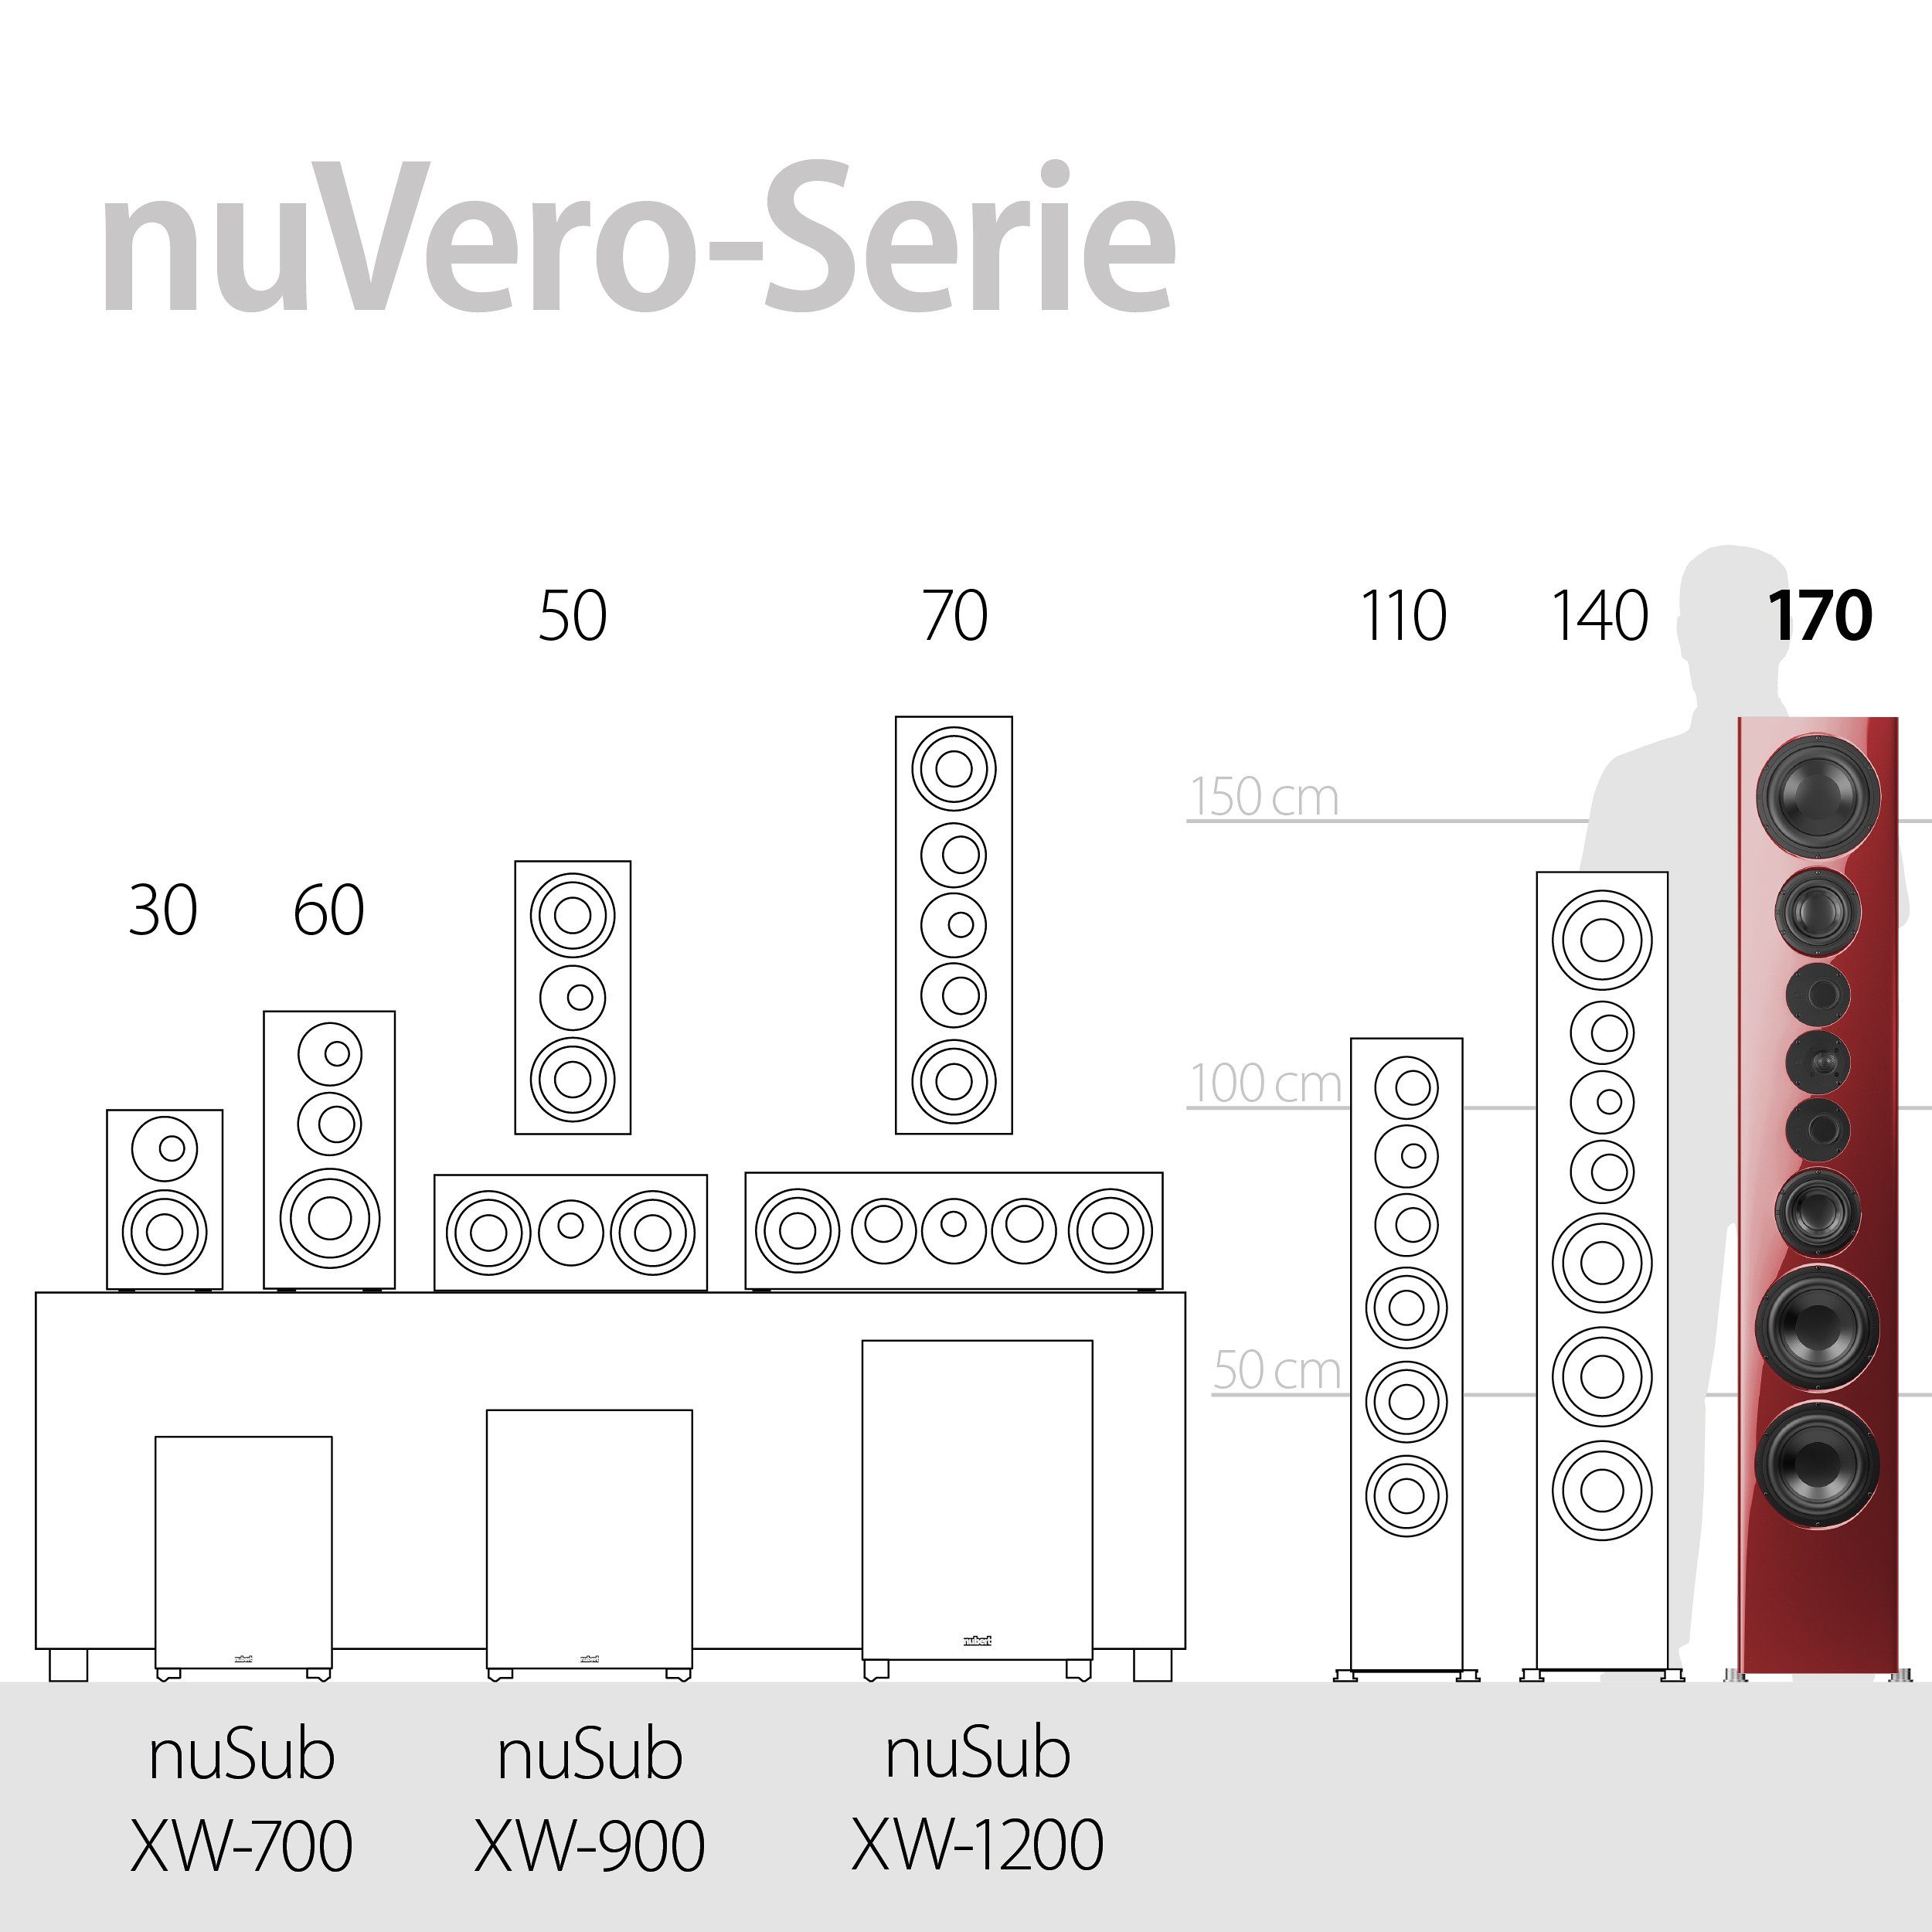 (650 Nubert W) Kristallweiß 170 Stand-Lautsprecher nuVero